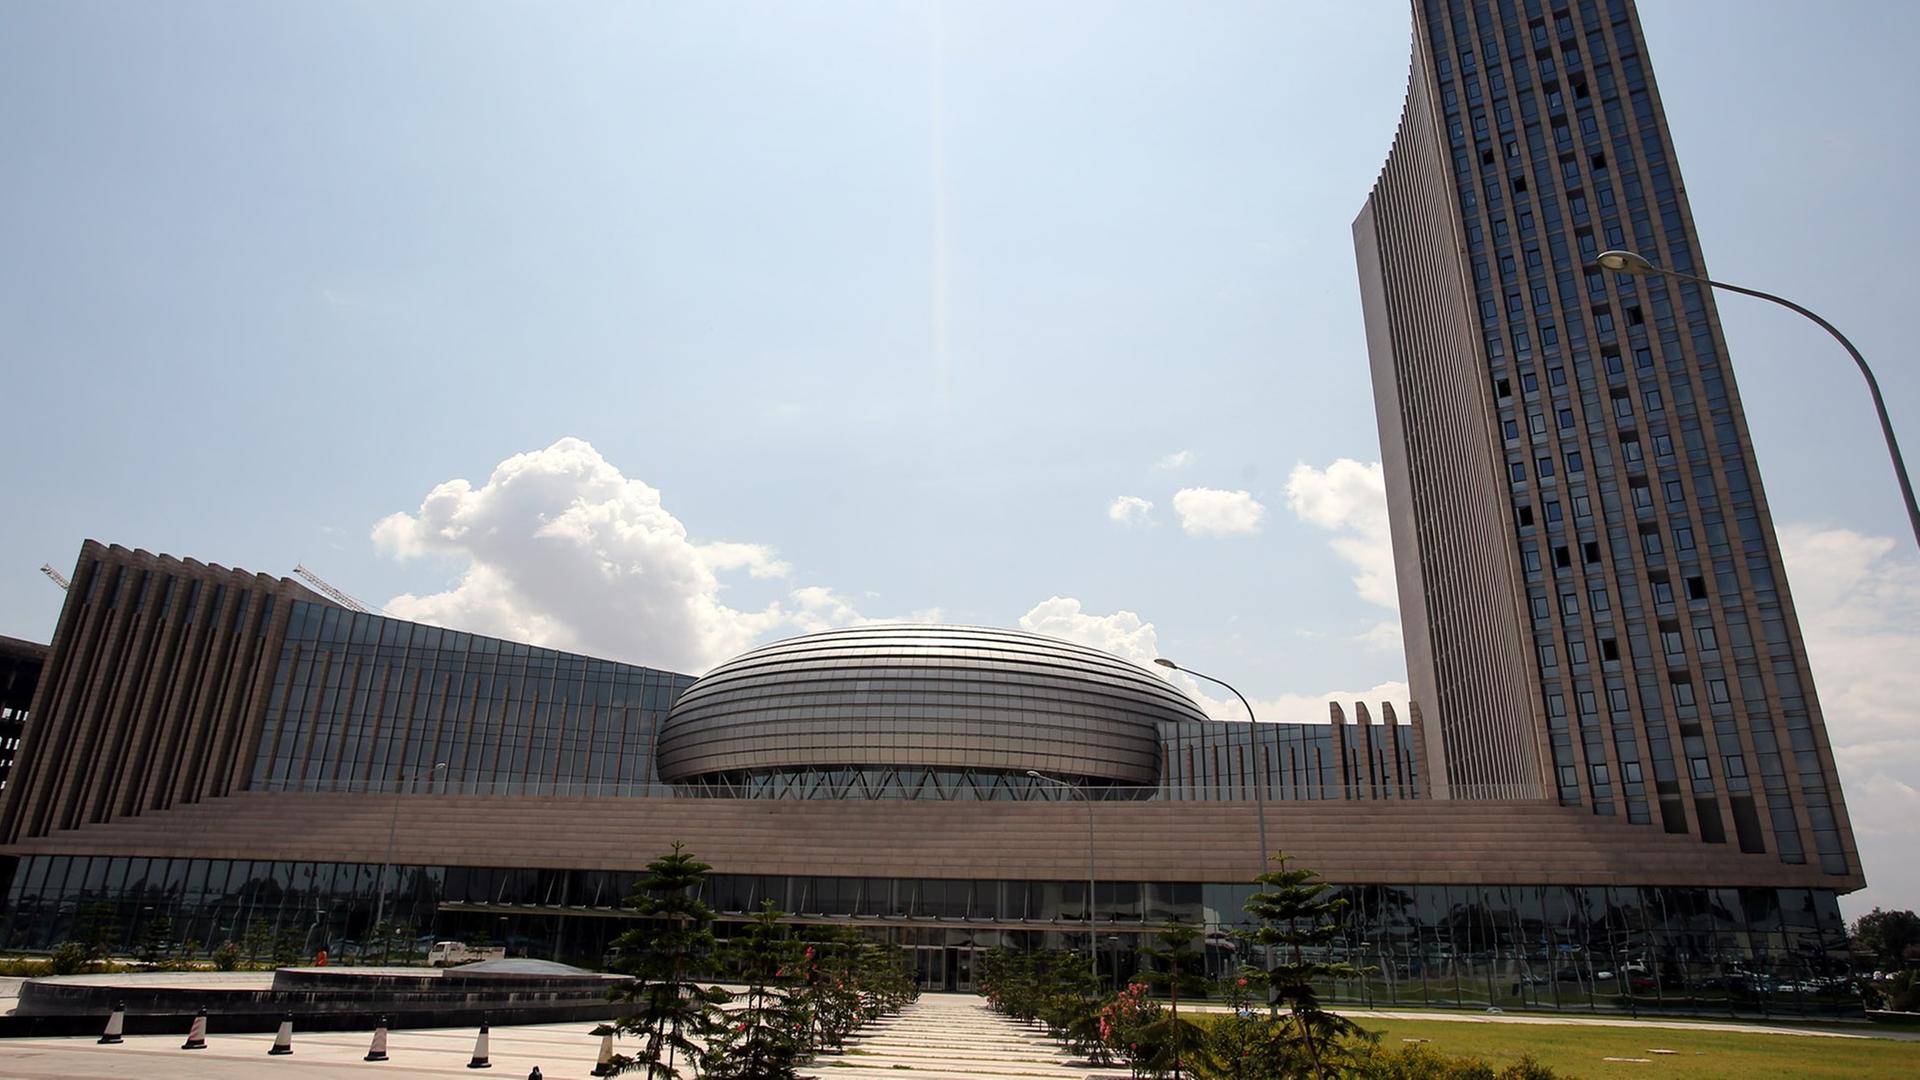 Konferenzgebäude der Afrikanischen Union, aufgenommen am 18.03.2013 in Addis Abeba in Äthiopien.